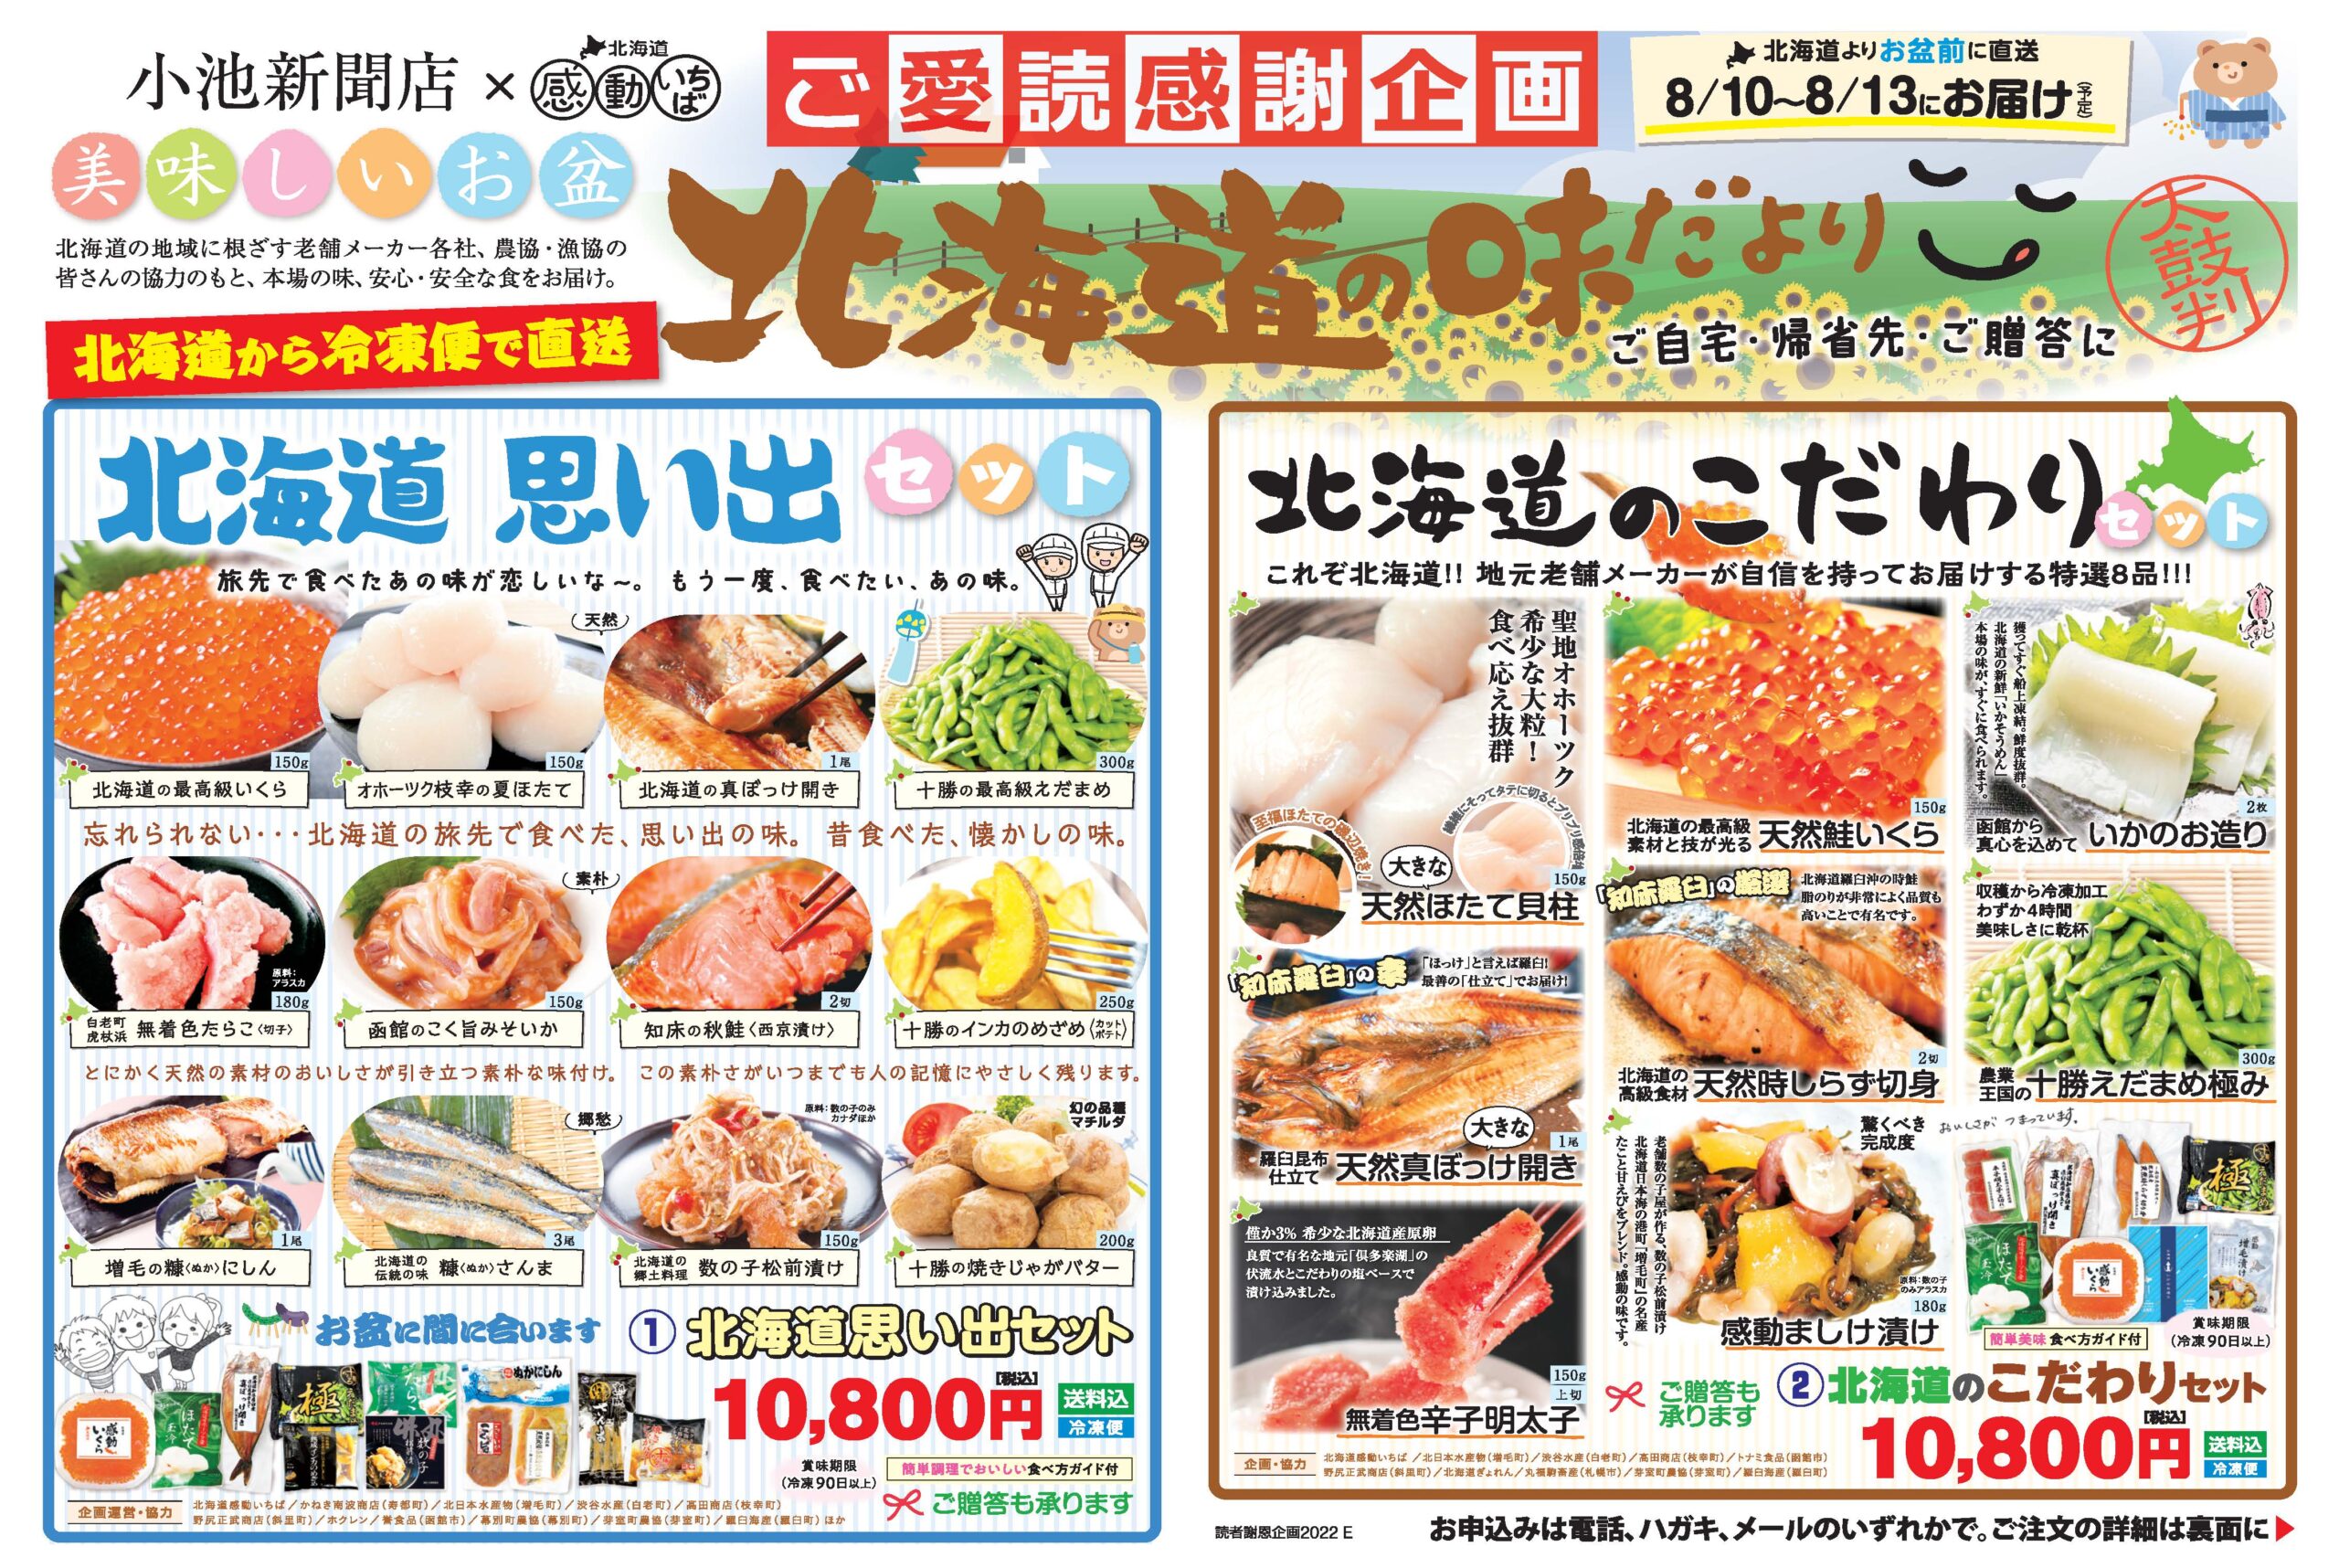 北海道の味だより 沖縄マンゴー 信濃毎日新聞 日本経済新聞 小池新聞店